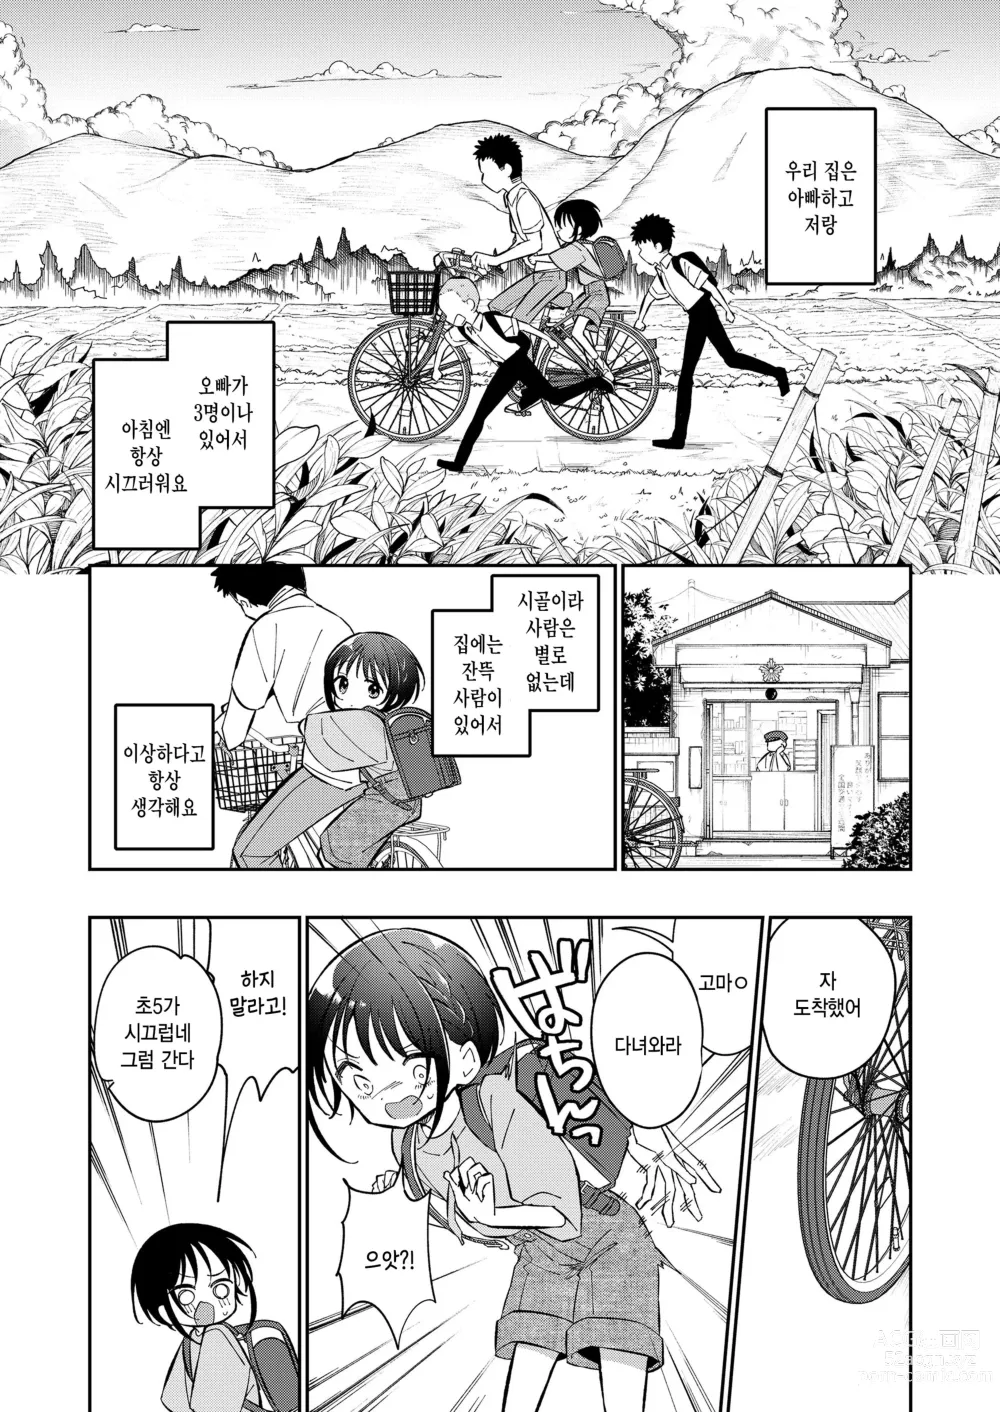 Page 3 of manga Watashi ga iki wo shiteru basho